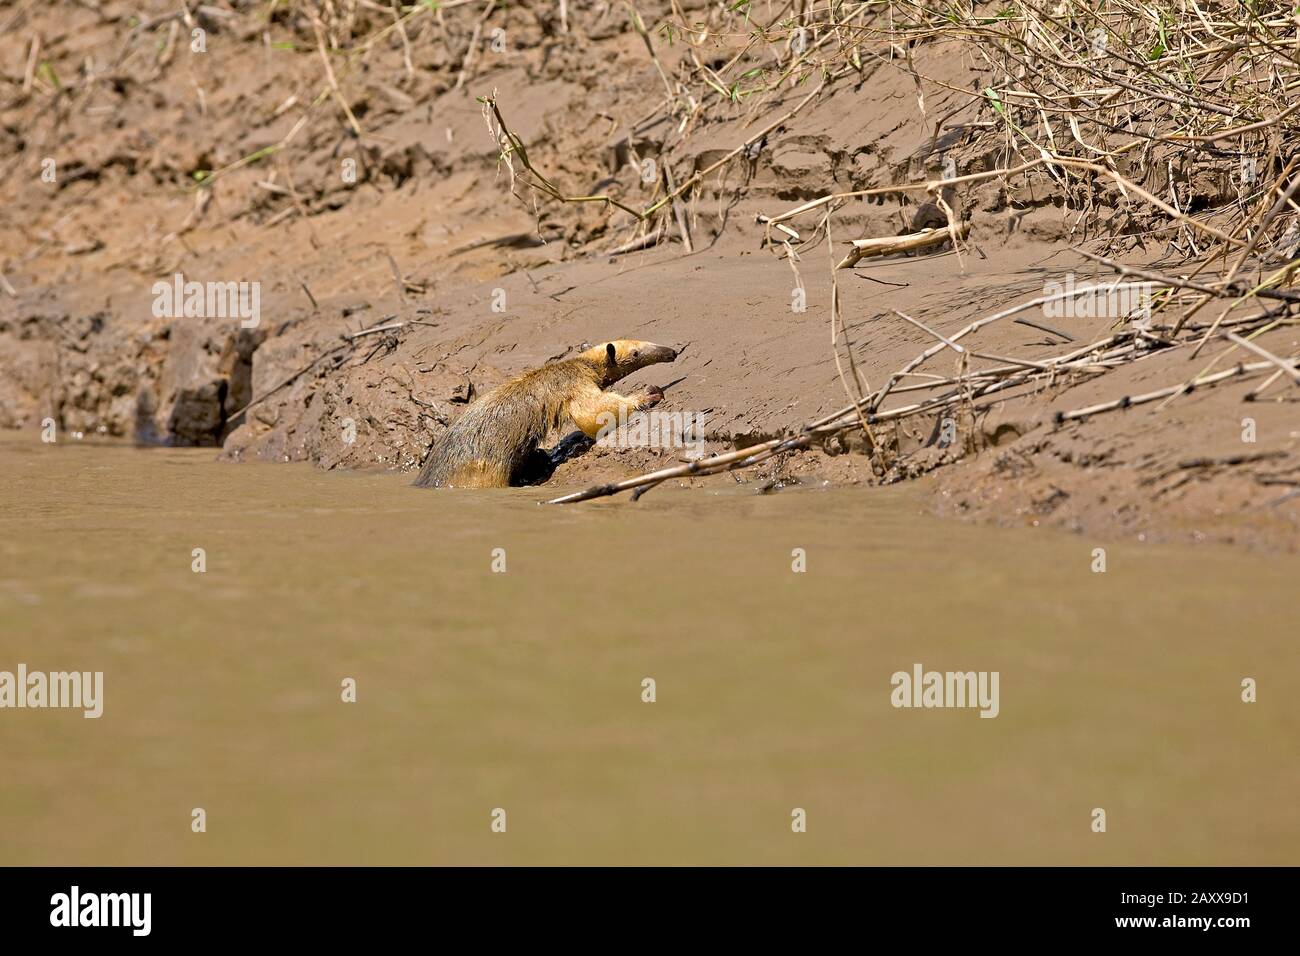 Oso hormiguero sur, Tamandua tetradactyla, Adulto cruzando el río Madre de Dios, el Parque Nacional del Manu en Perú Foto de stock